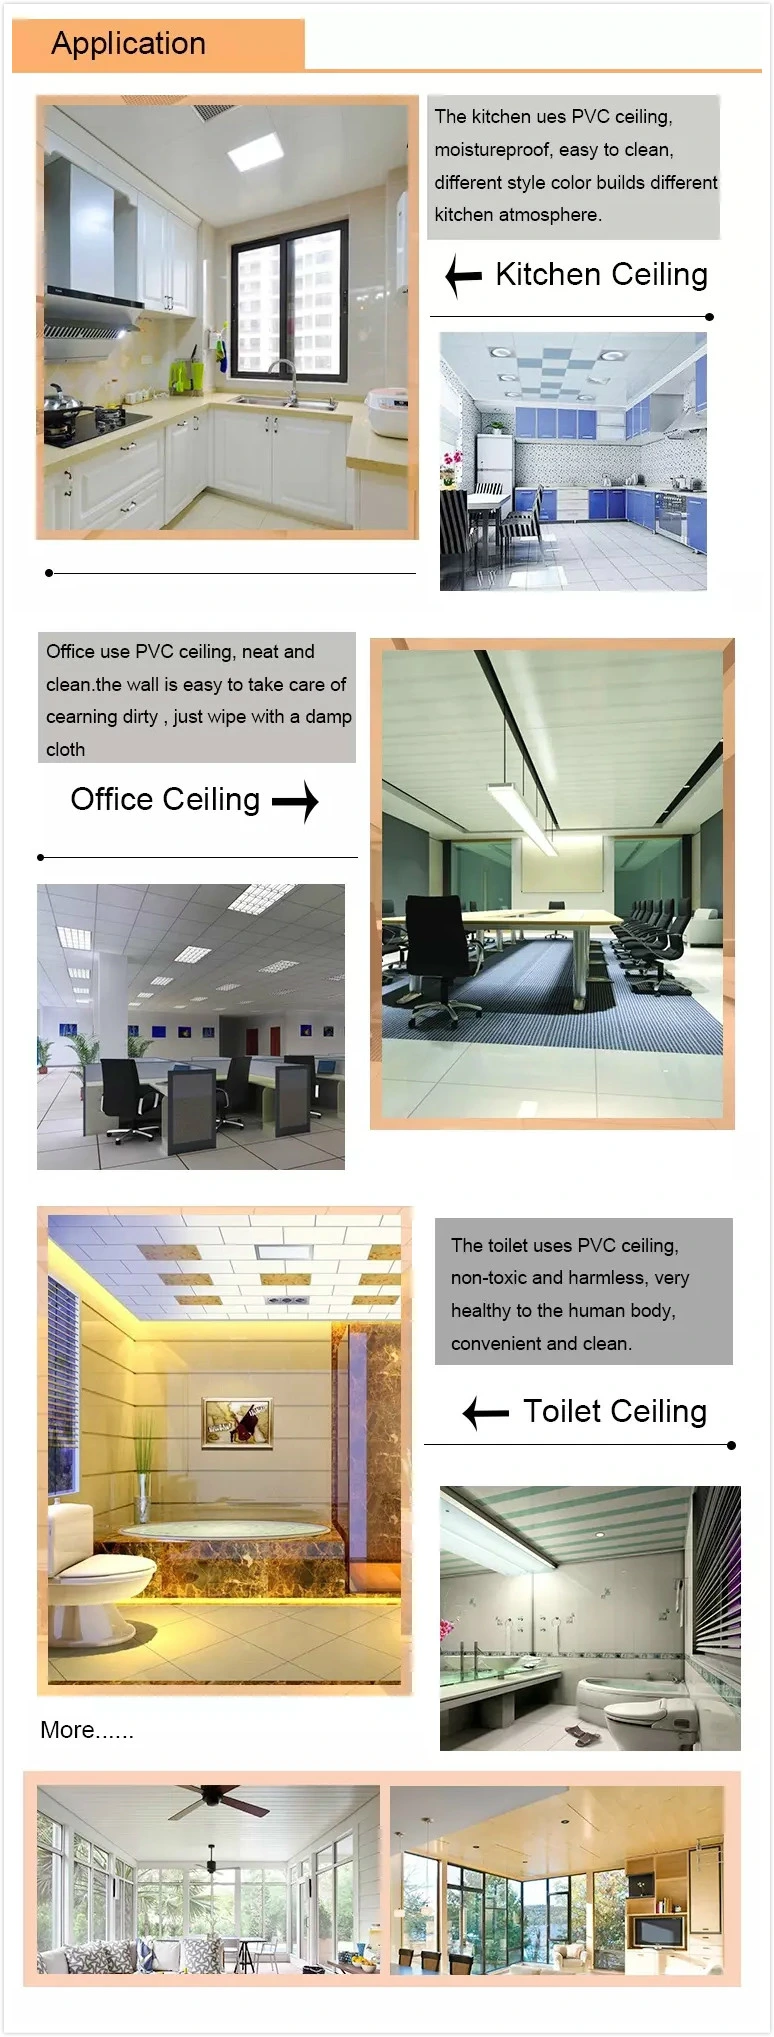 595mm/603mm PVC Plastic PVC Garage Color Decorative PVC Ceiling Panels